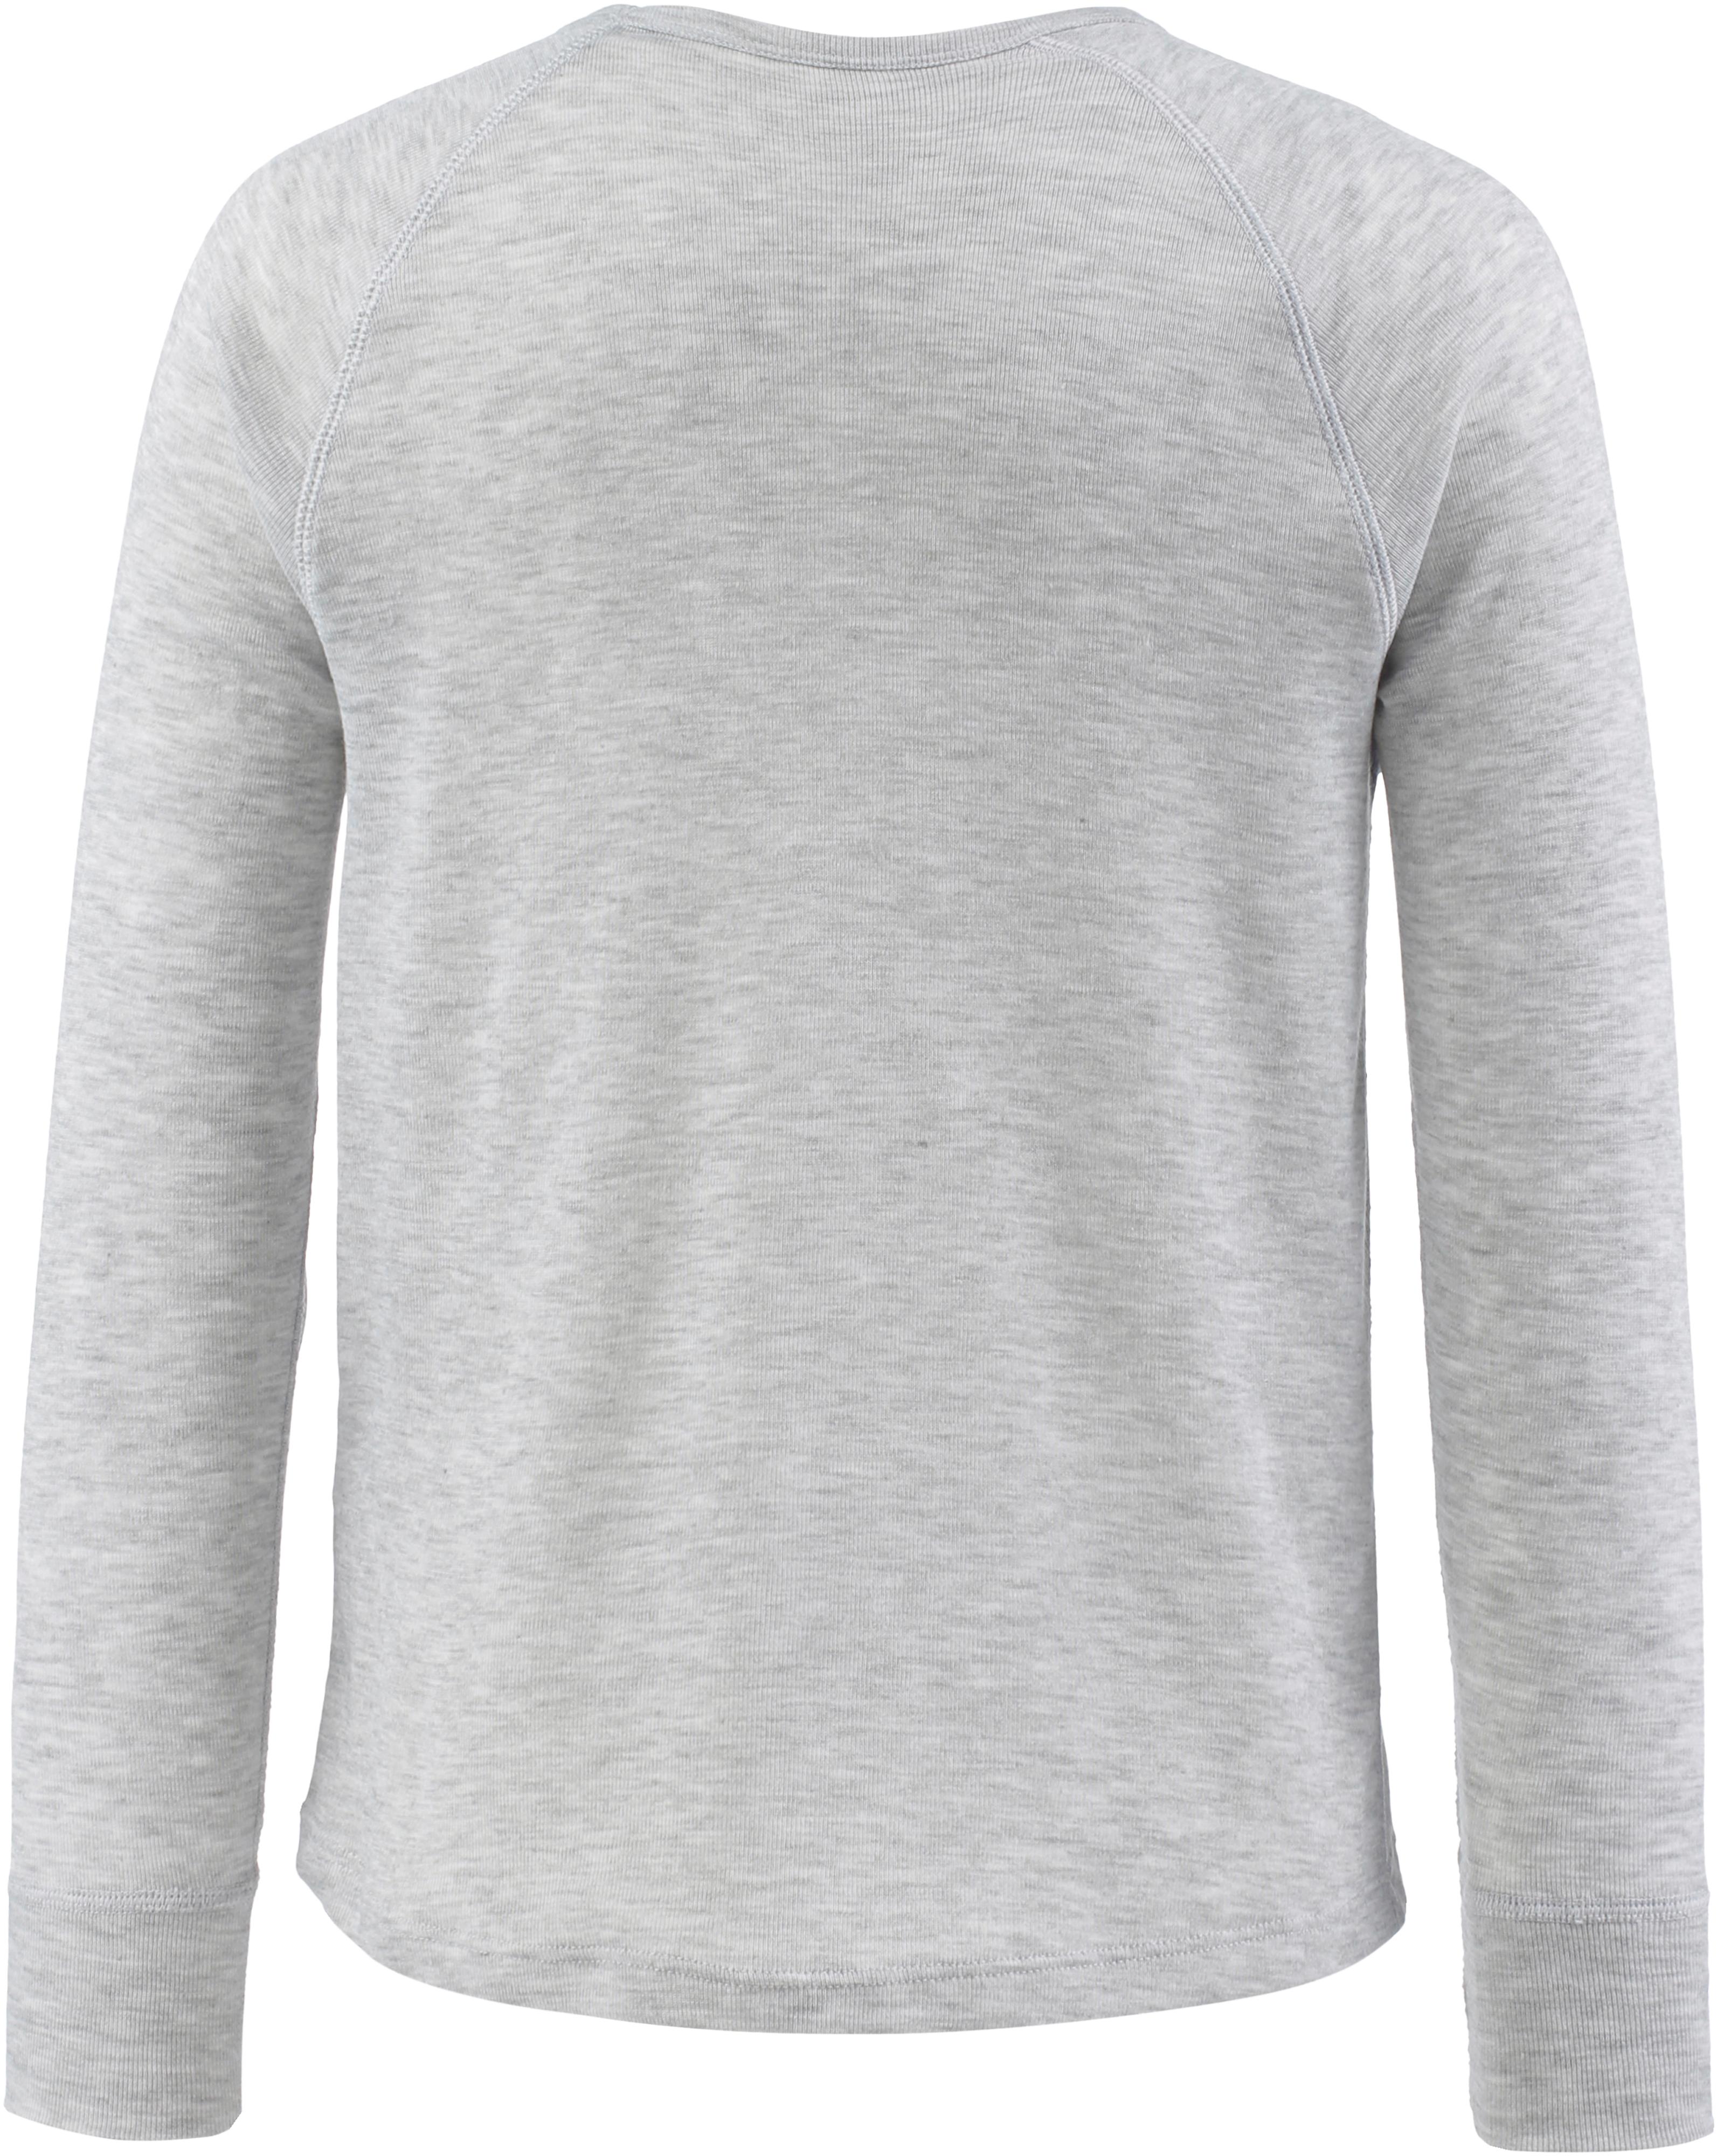 melange Online im Shop Unterhemd von grigio CMP SportScheck kaufen Jungen